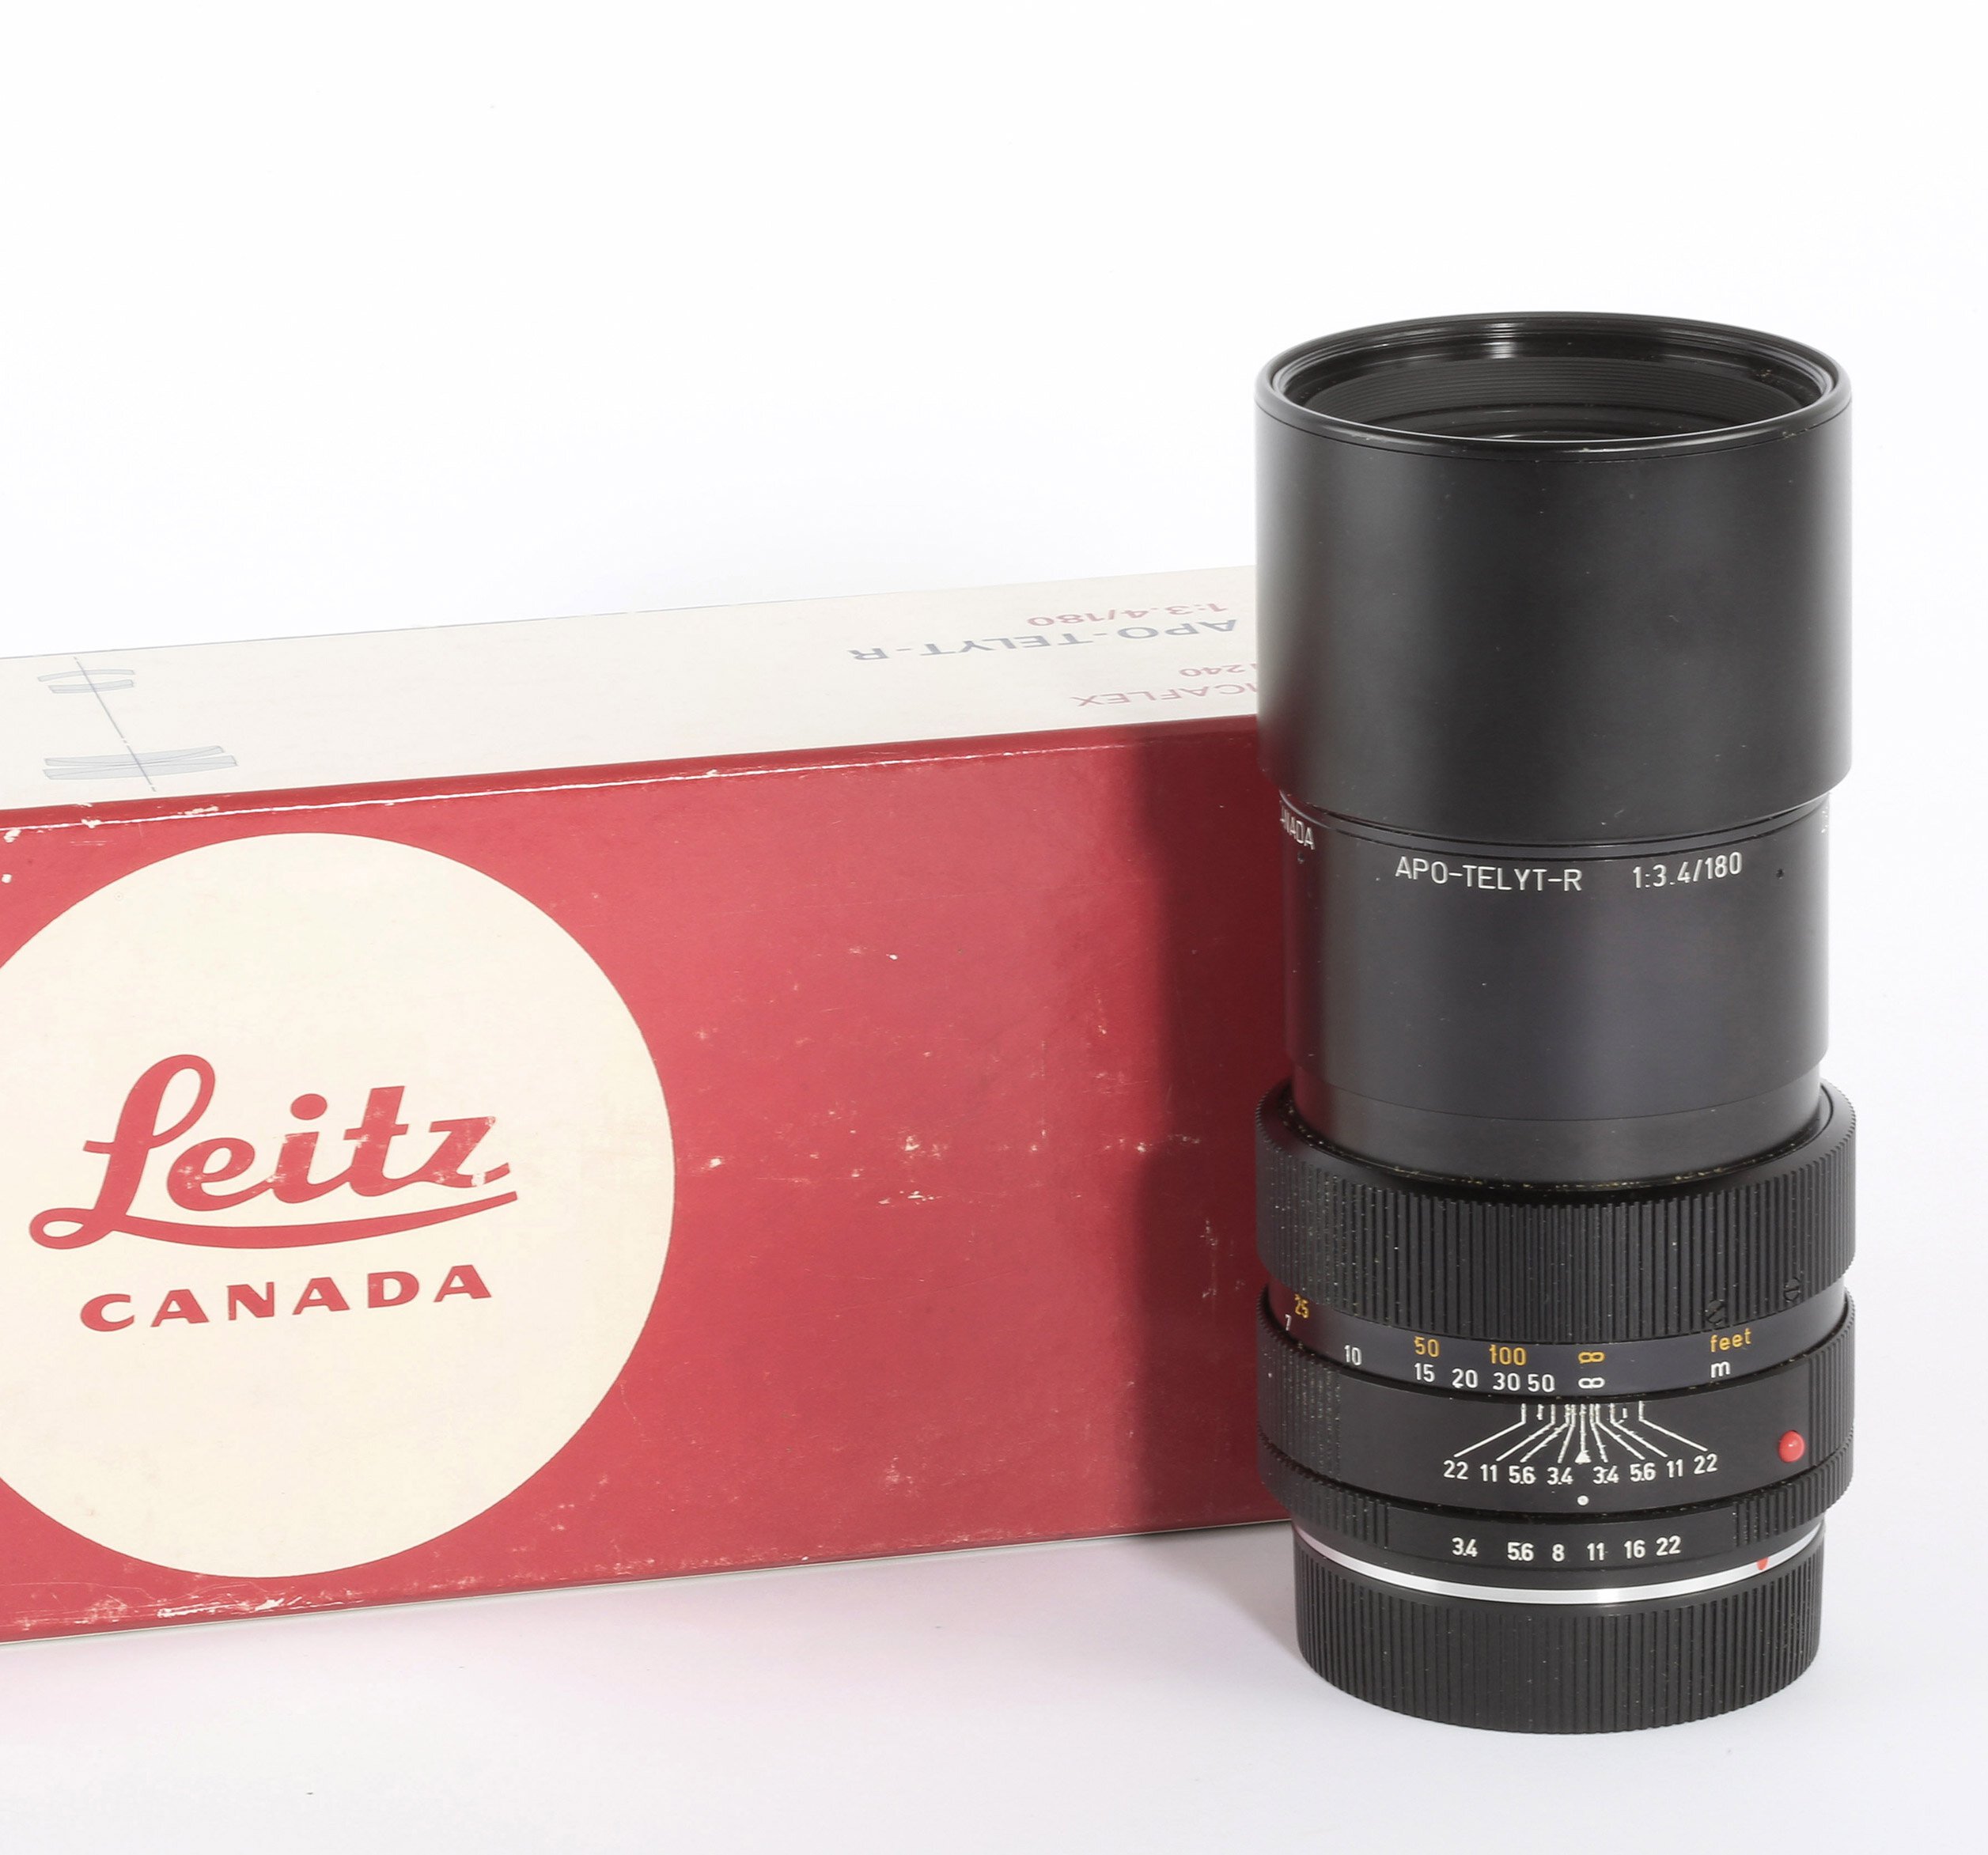 Leitz Leica APO-Telyt-R 1:3,4/180mm Canada 11240